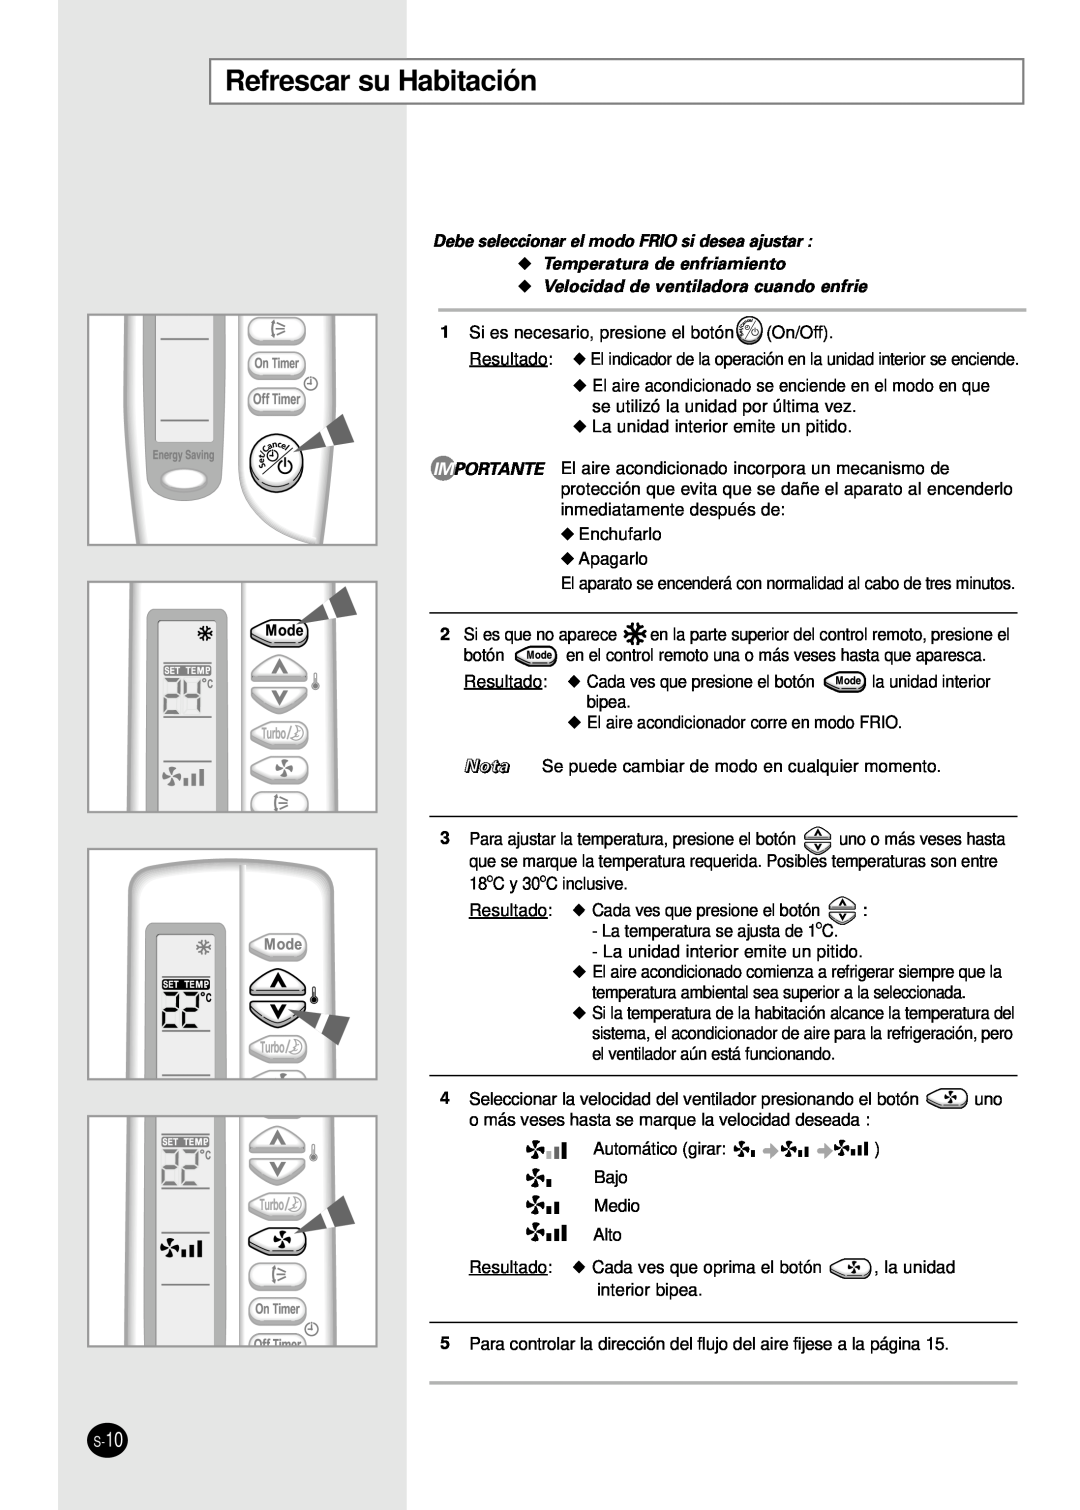 Samsung AS09S8GB Refrescar su Habitación, Debe seleccionar el modo FRIO si desea ajustar, Temperatura de enfriamiento 